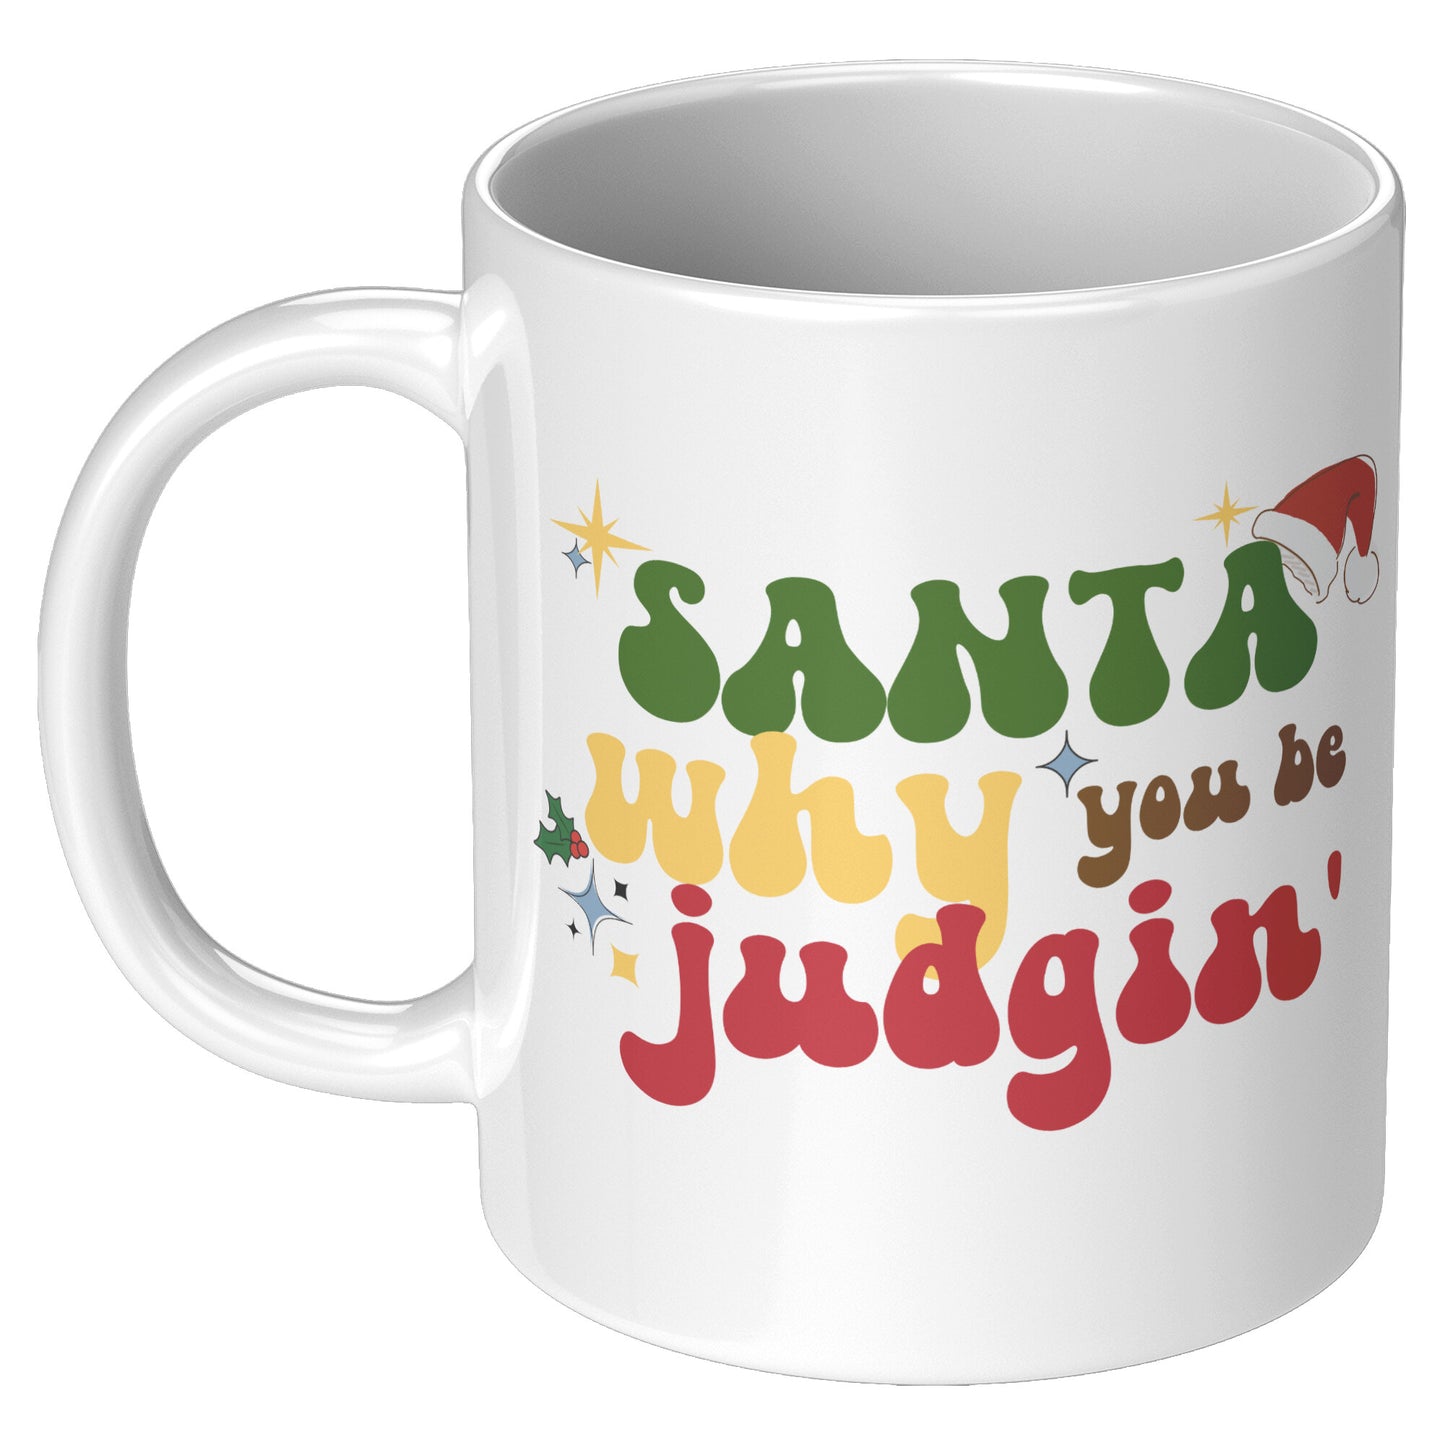 Santa Why You Be Judging Funny Christmas Mug